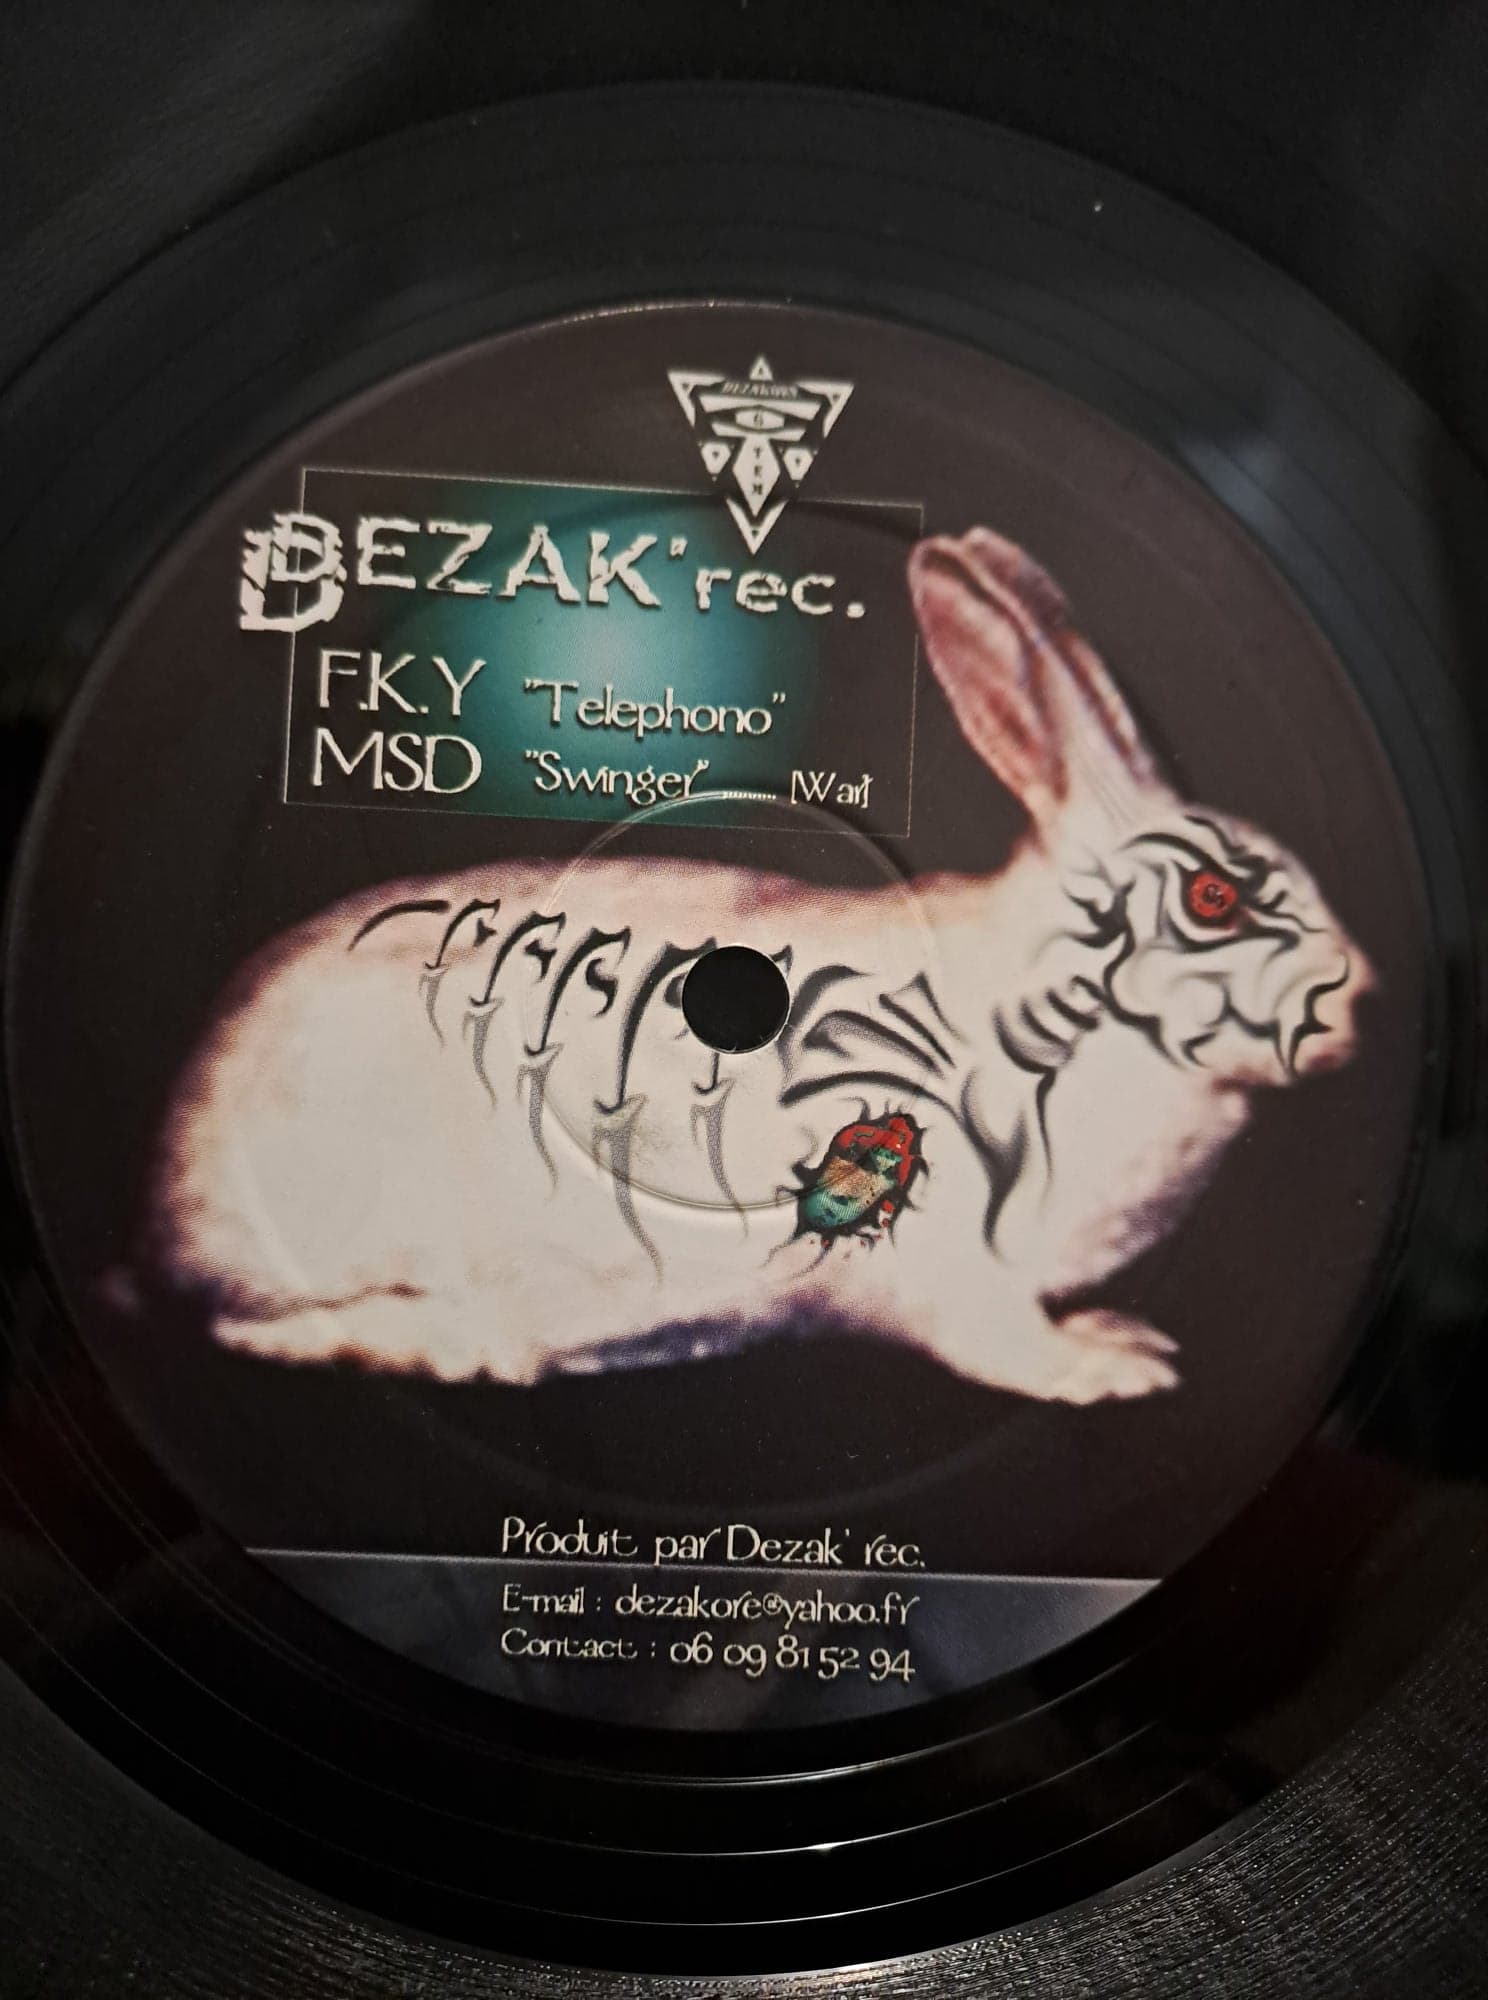 Dezakore 01 - vinyle freetekno